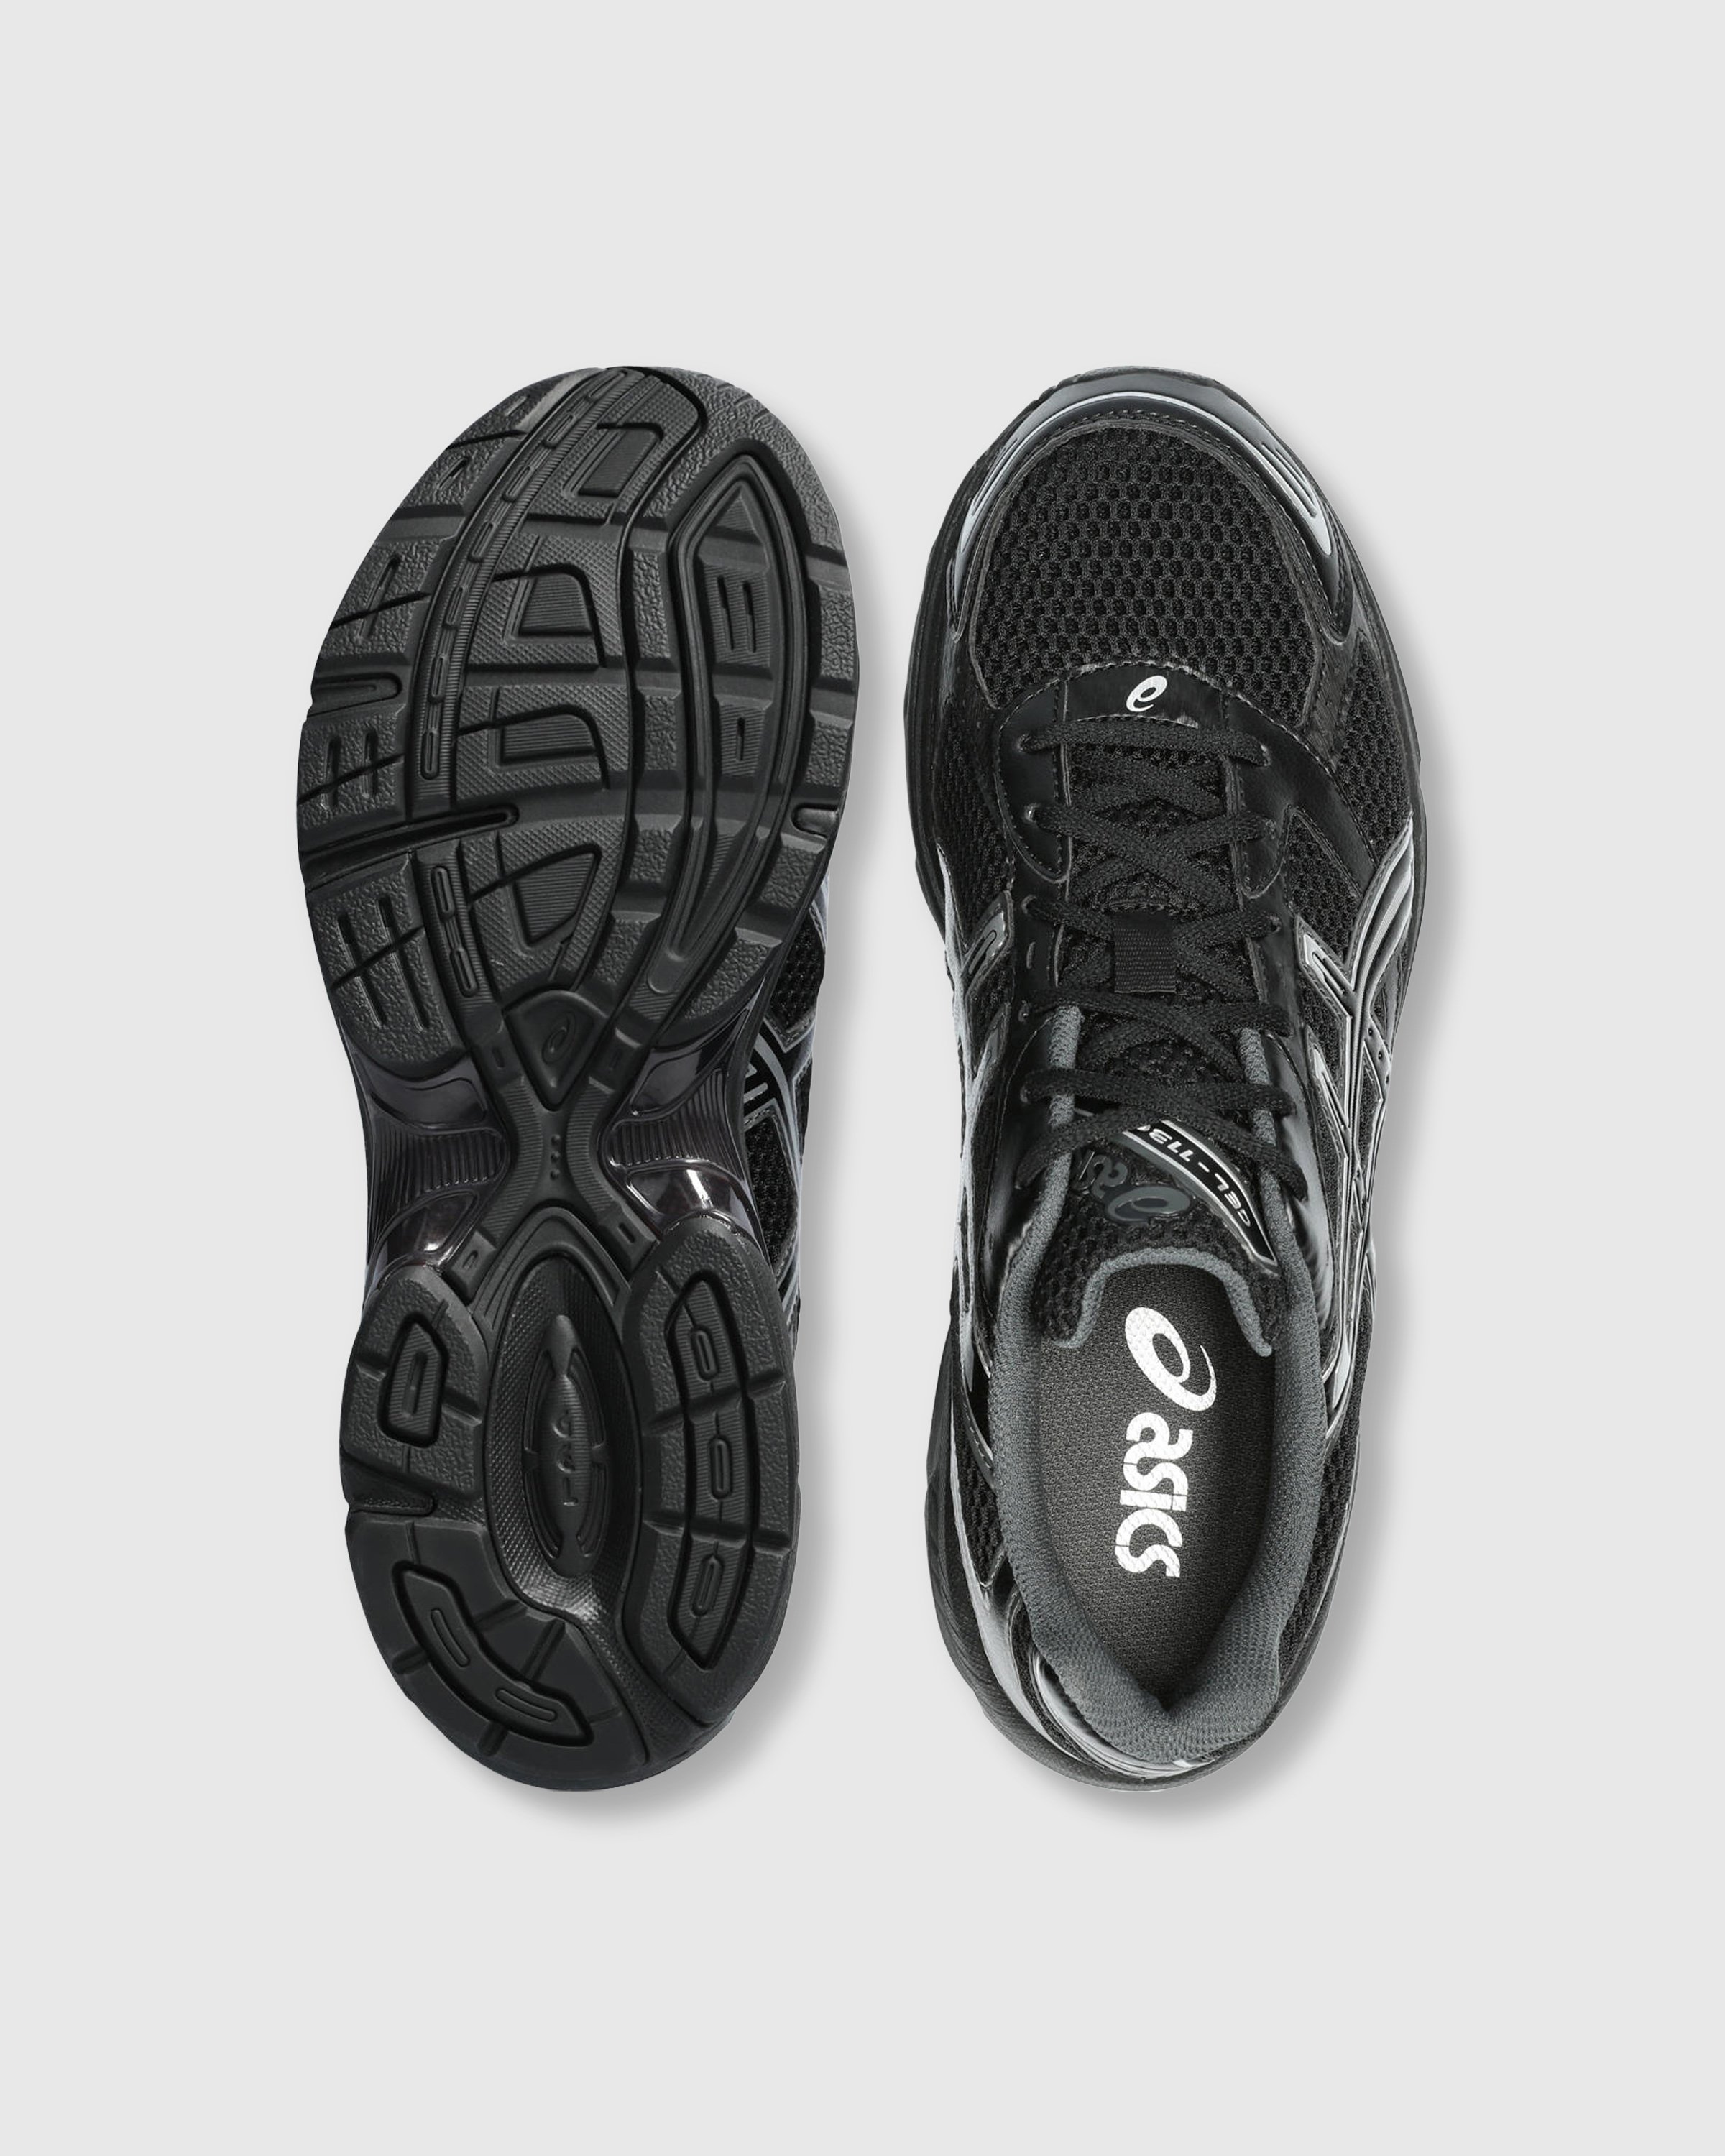 asics - GEL-1130 Black/Pure Silver - Footwear - Black - Image 6